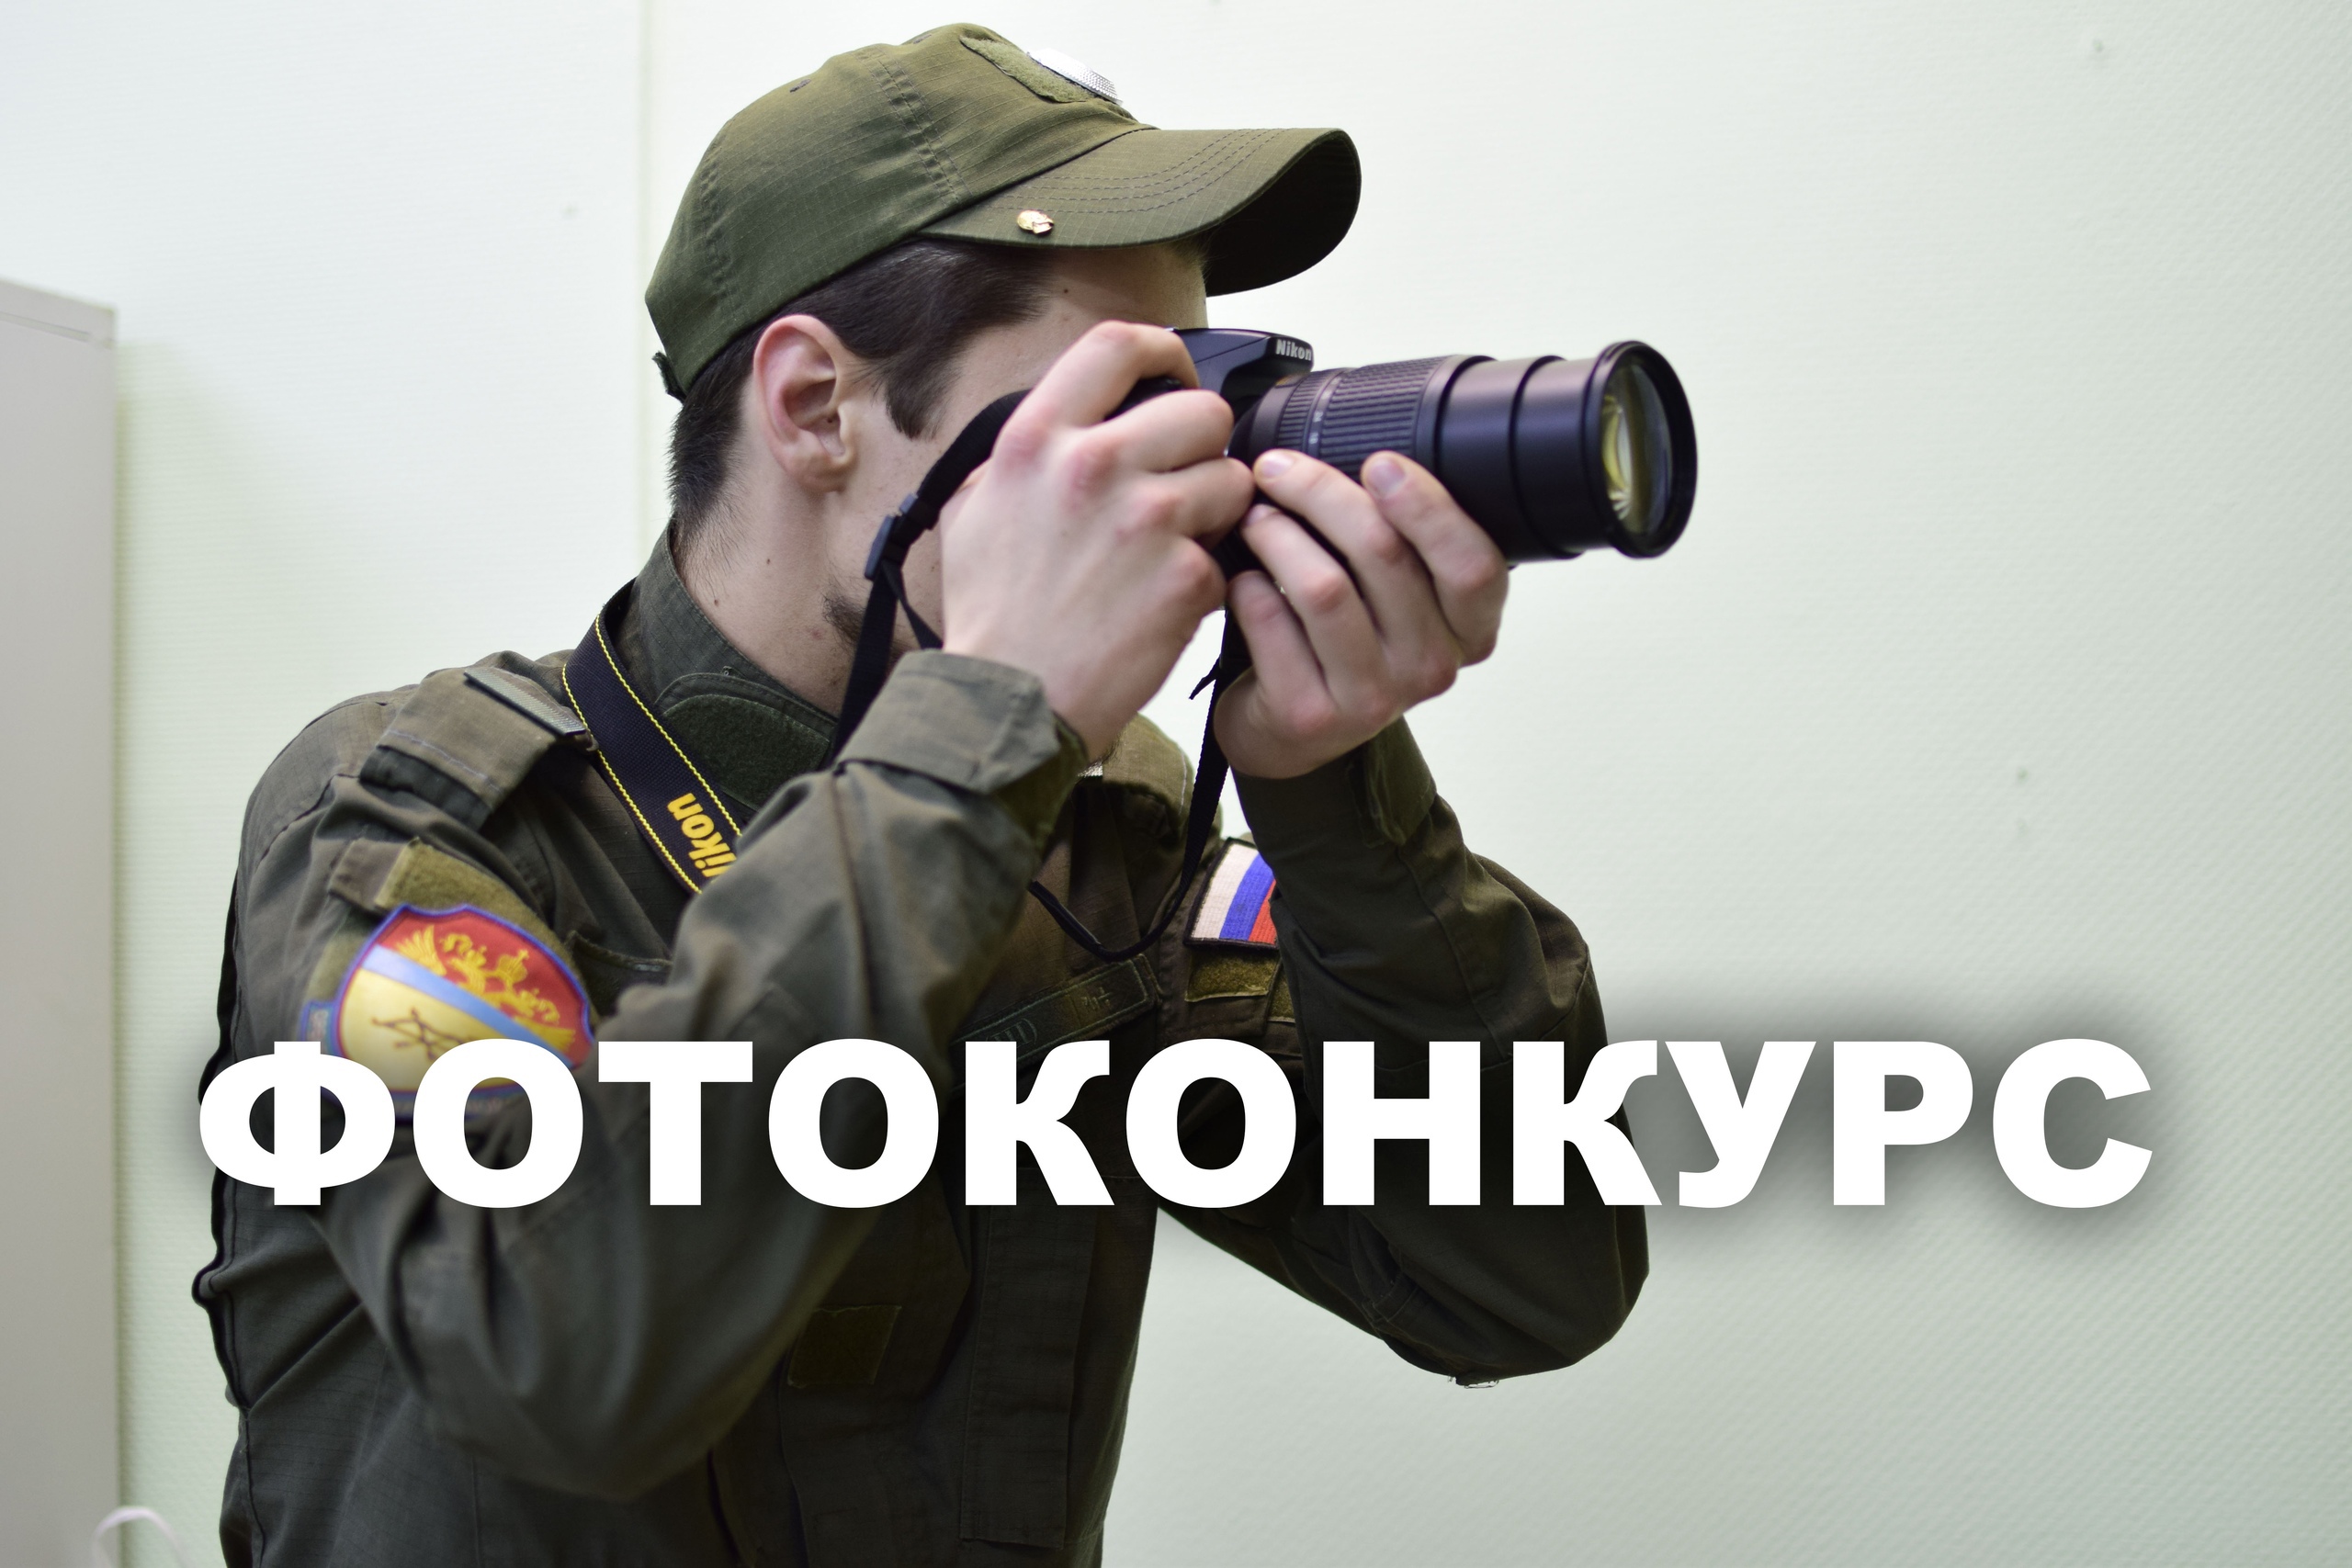 Оренбургское казачье войско объявляет конкурс реконструкции фотографии